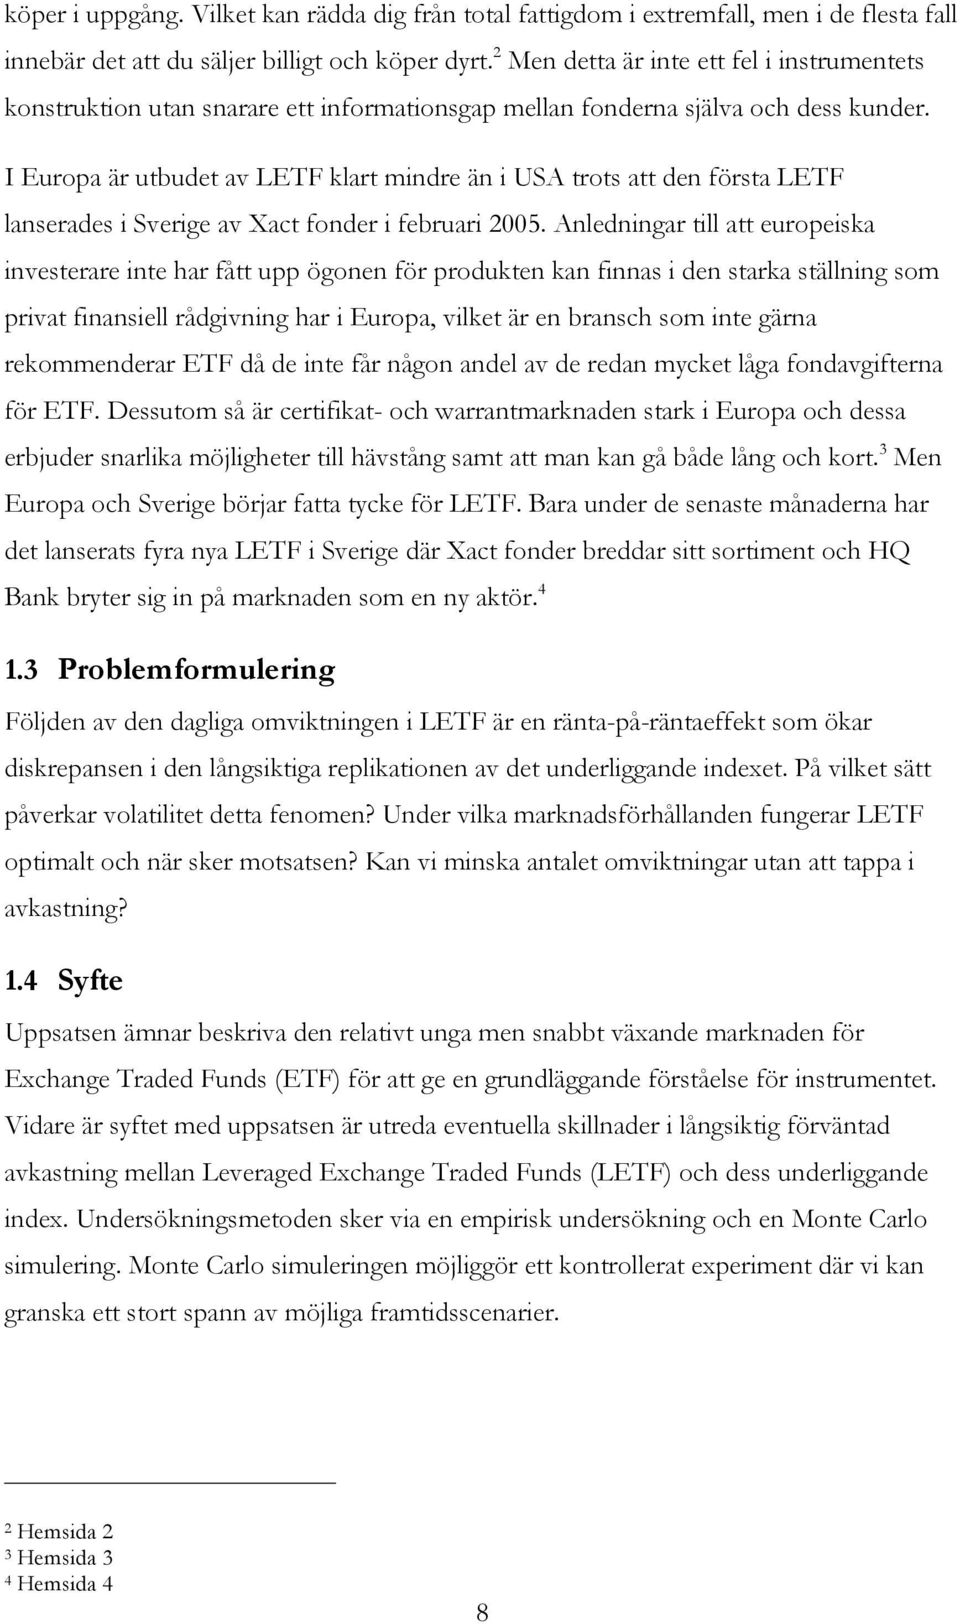 I Europa är utbudet av LETF klart mindre än i USA trots att den första LETF lanserades i Sverige av Xact fonder i februari 2005.